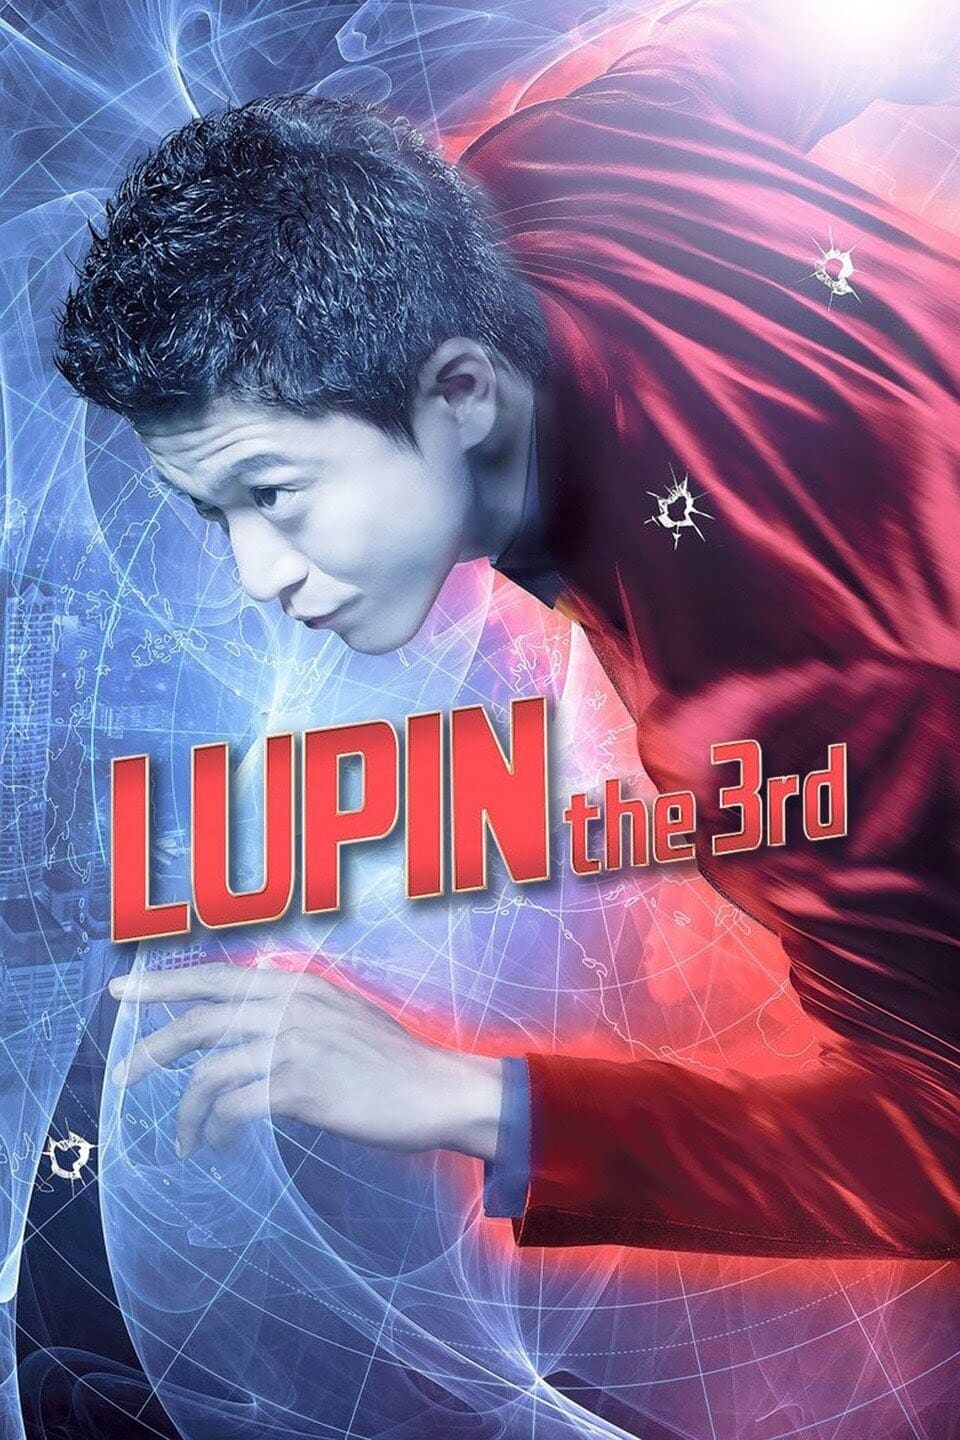 Lupin III (2014)